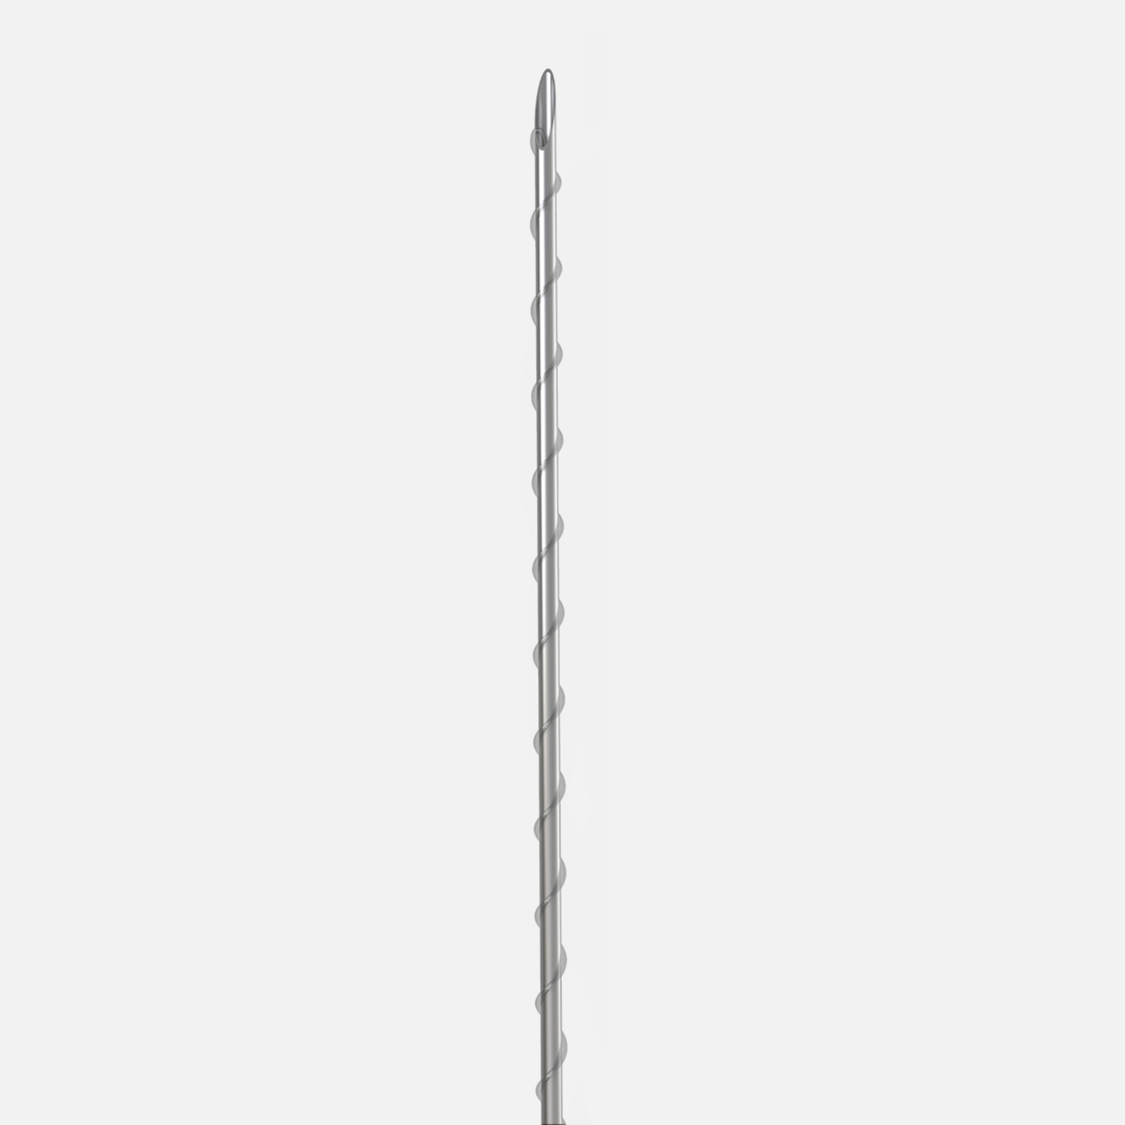 Нить из полимолочной кислоты обычная на полой игле нить спираль/ Single Screw (Sharp Needle) PLLA